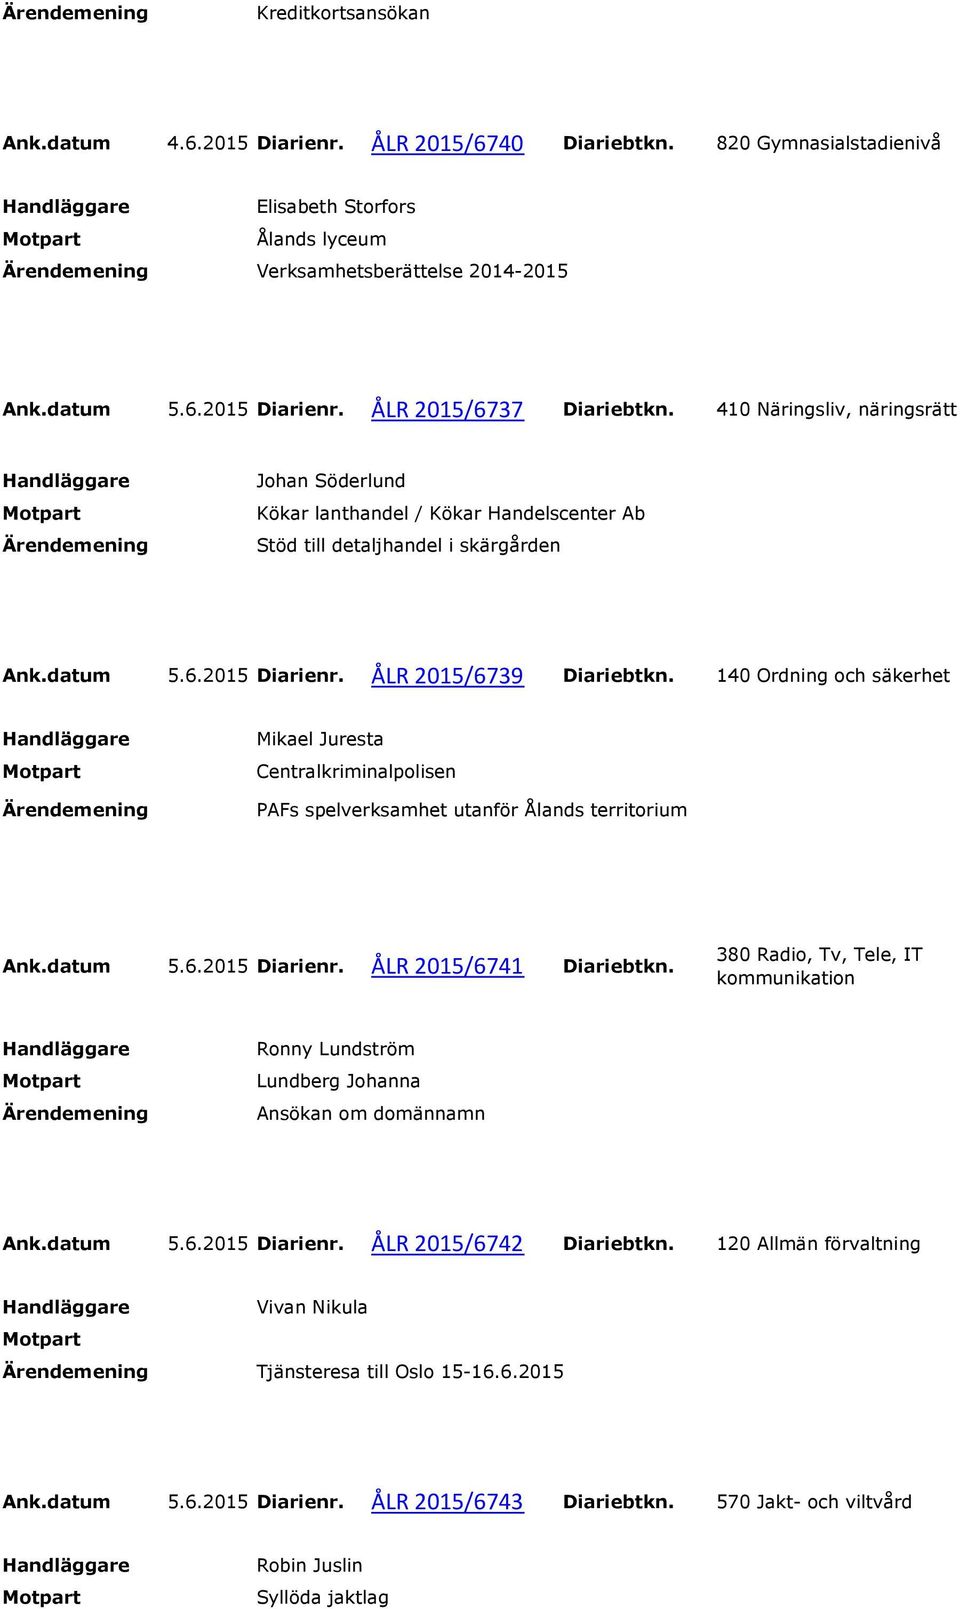 140 Ordning och säkerhet Mikael Juresta Centralkriminalpolisen PAFs spelverksamhet utanför Ålands territorium Ank.datum 5.6.2015 Diarienr. ÅLR 2015/6741 Diariebtkn.